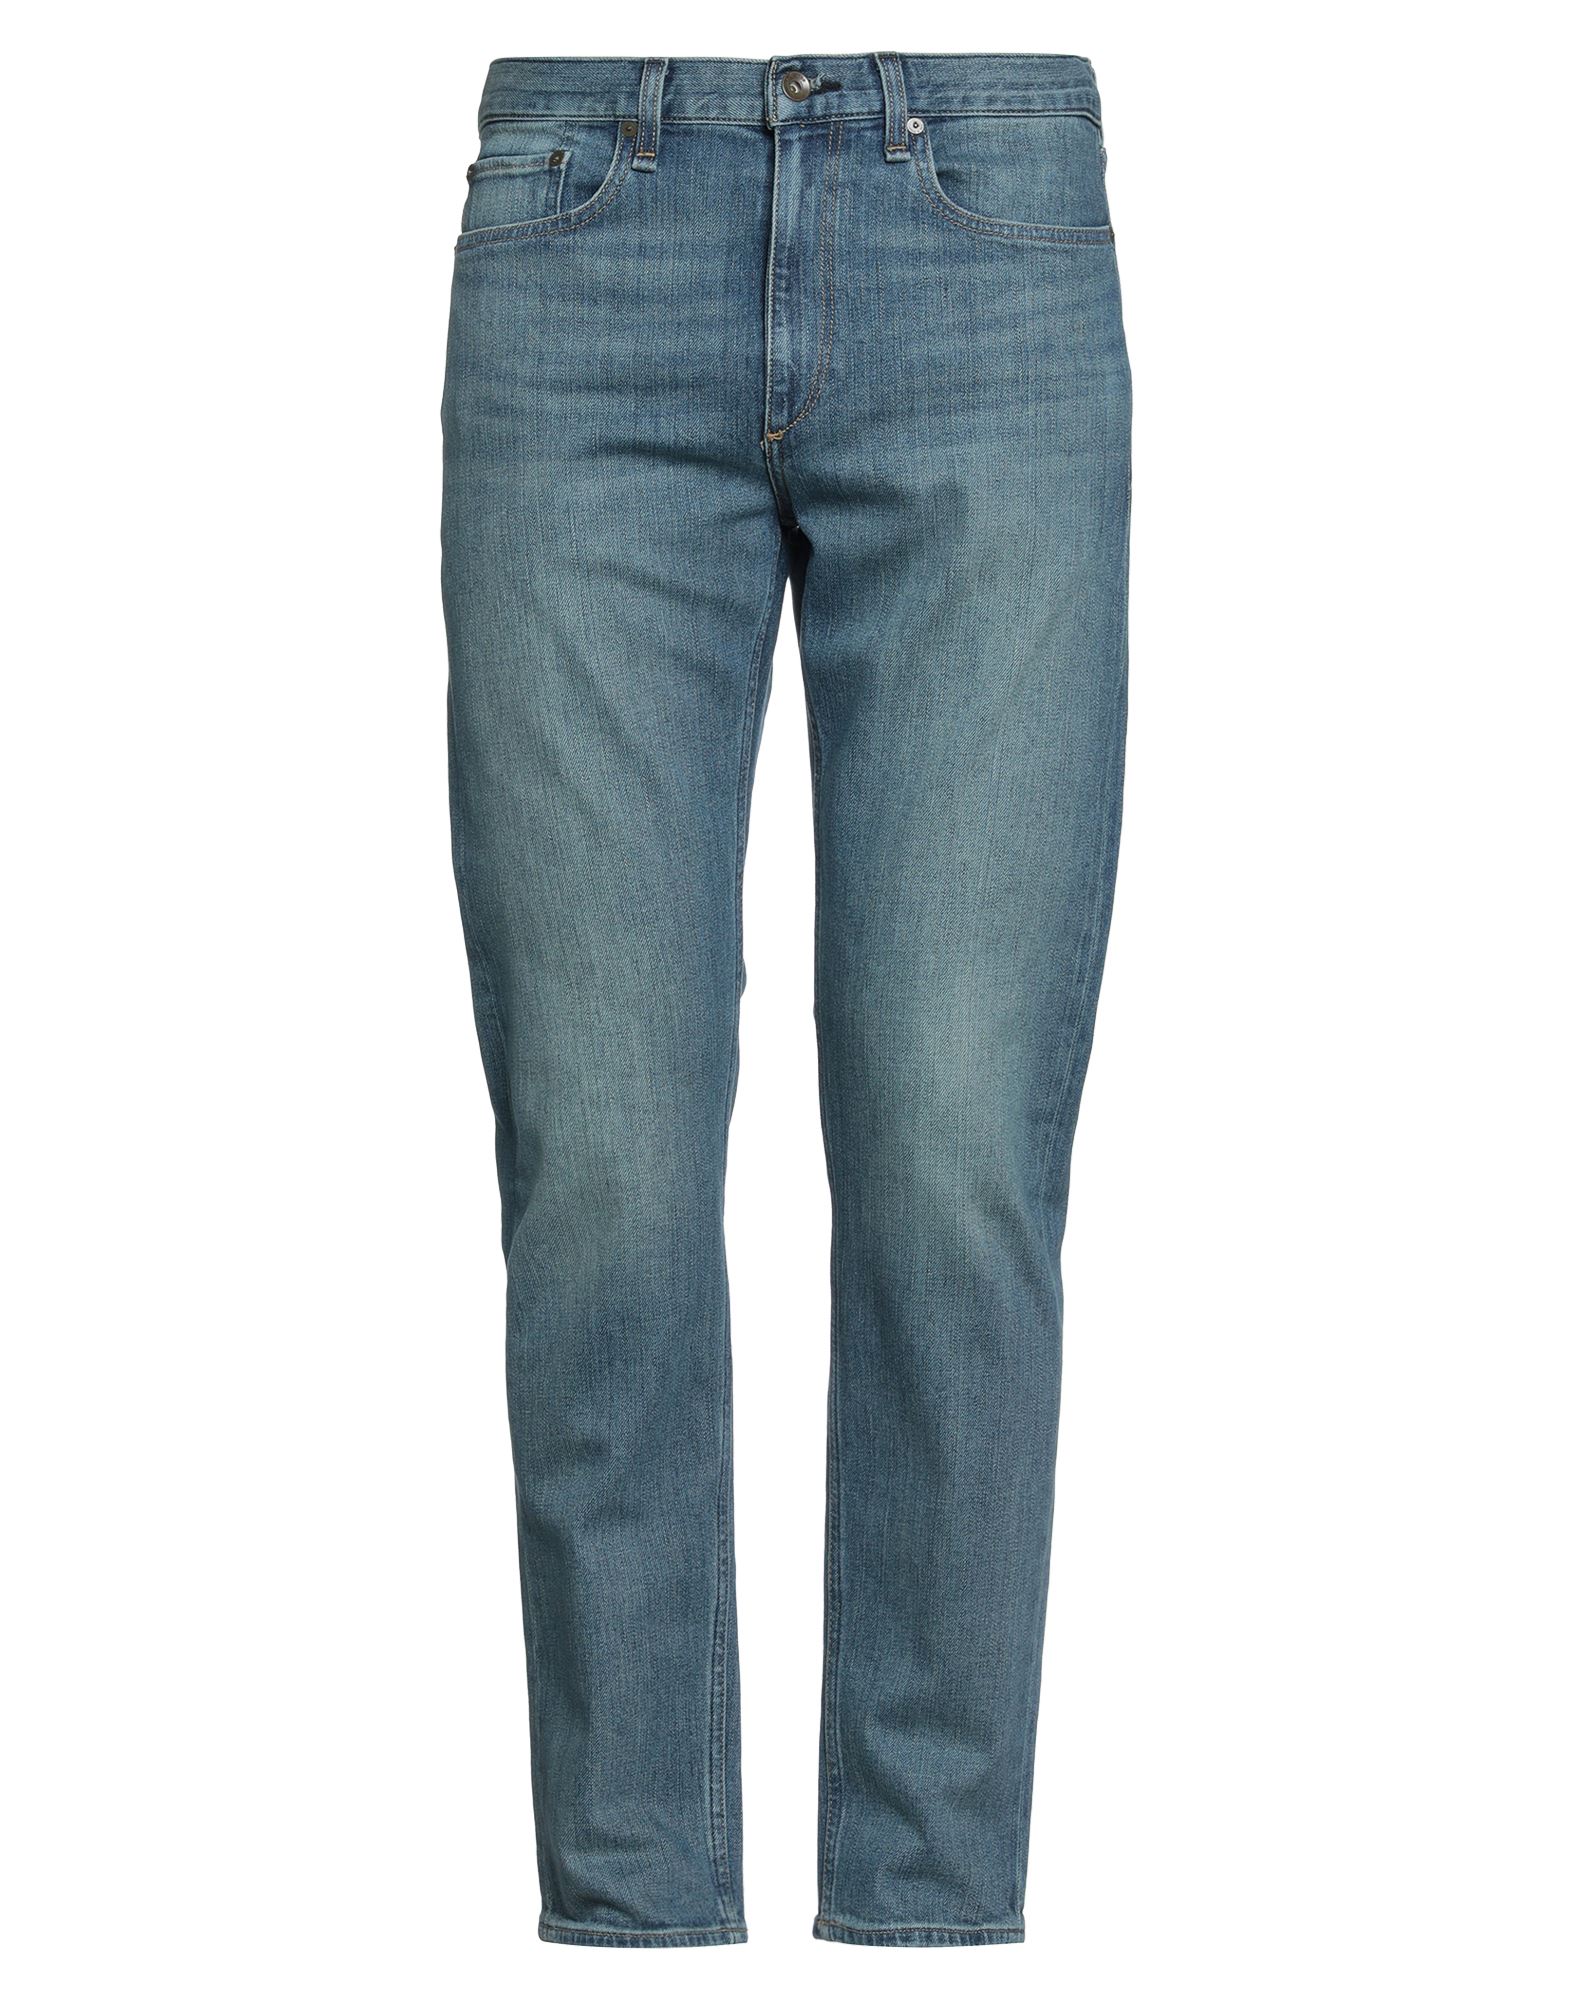 Rag & Bone Man Jeans Blue Size 29w-32l Cotton, Elastane